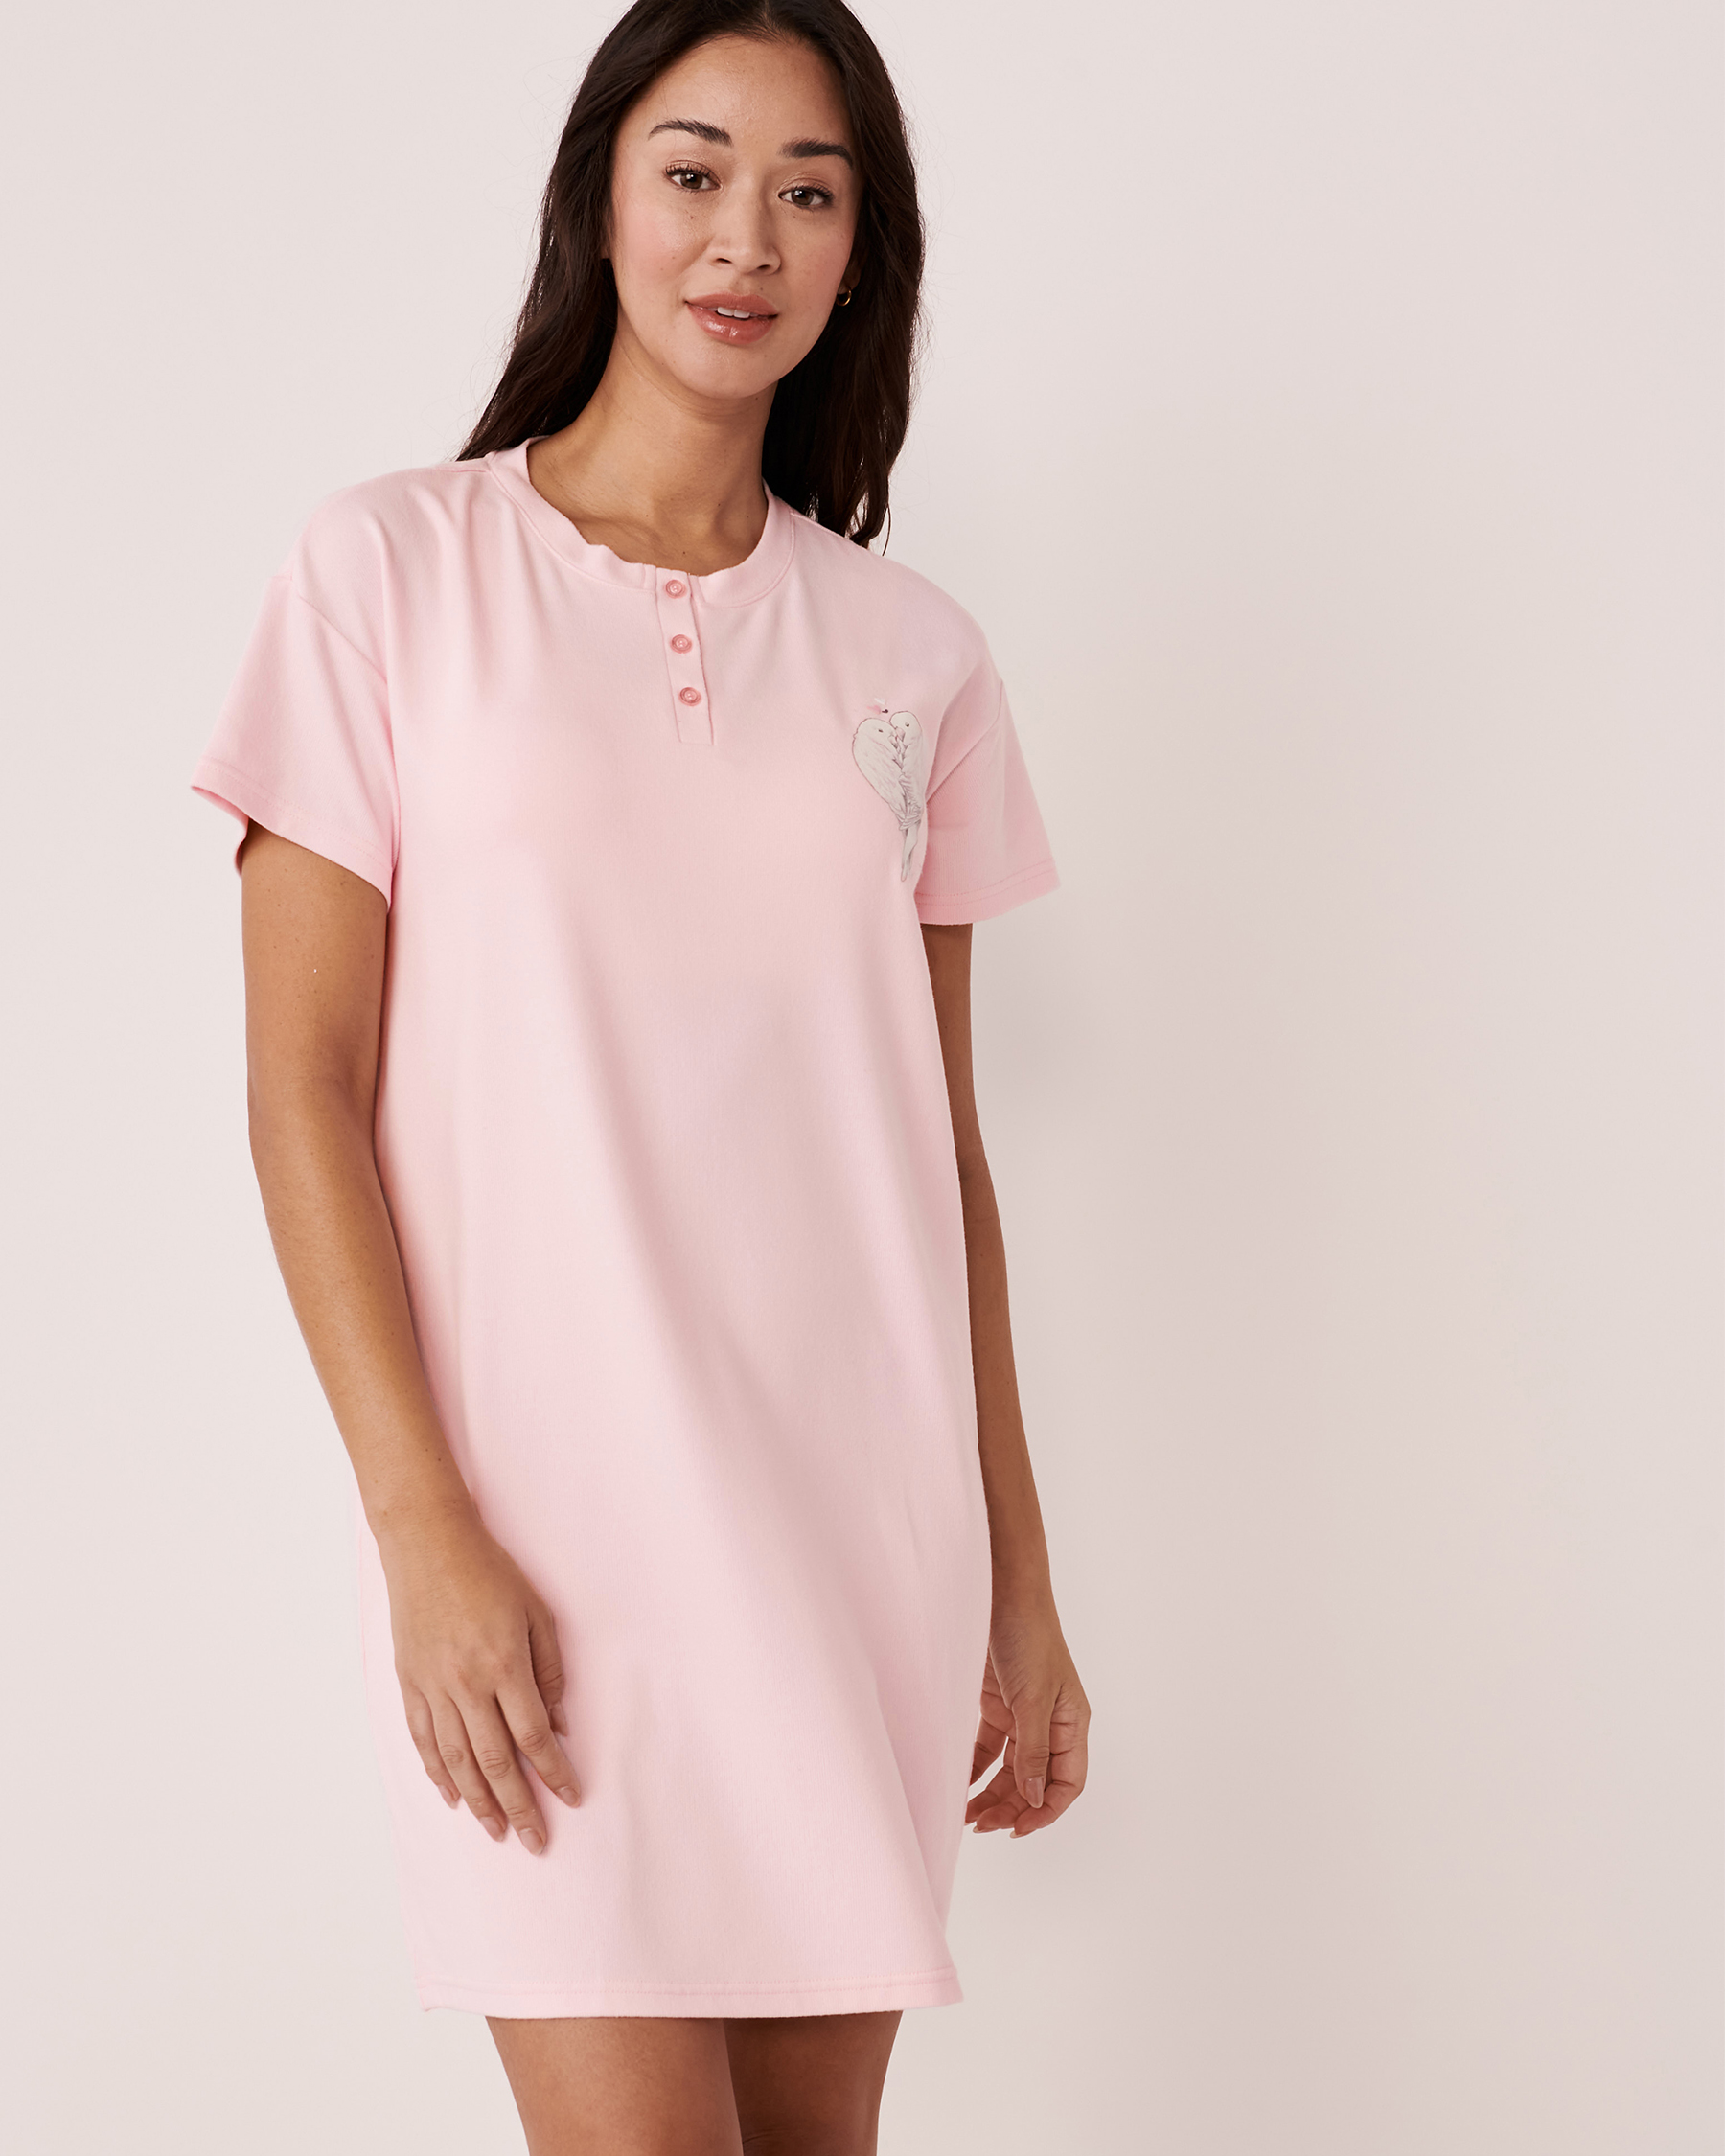 LA VIE EN ROSE Recycled Fibers Short Sleeve Sleepshirt Ballerina pink 40500241 - View1